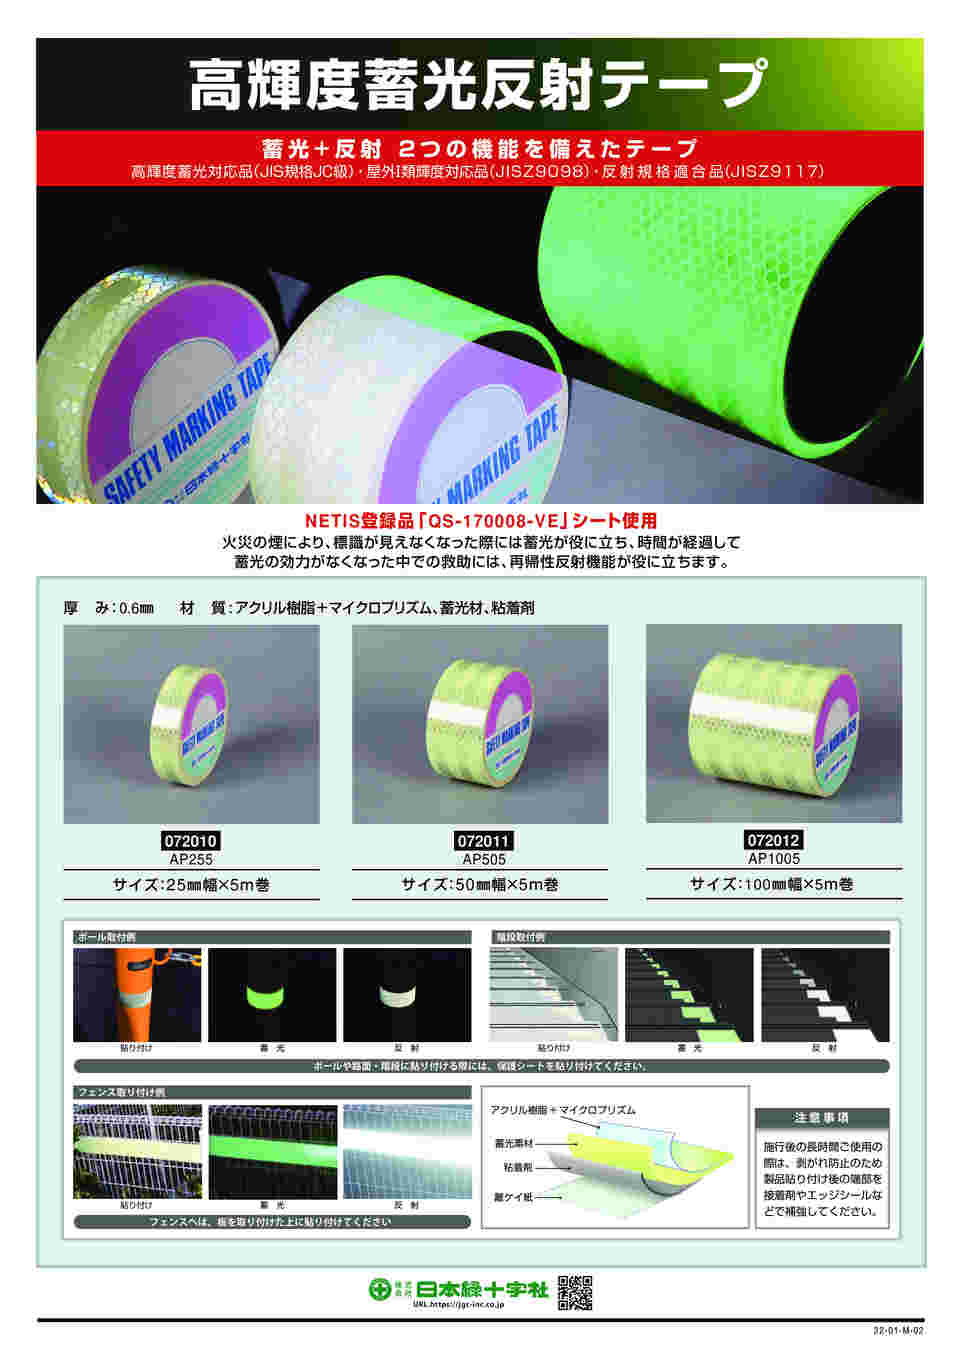 税込) 高輝度蓄光反射テープ 100mm幅×5m AP1005 日本緑十字社 damaltex.com.pe